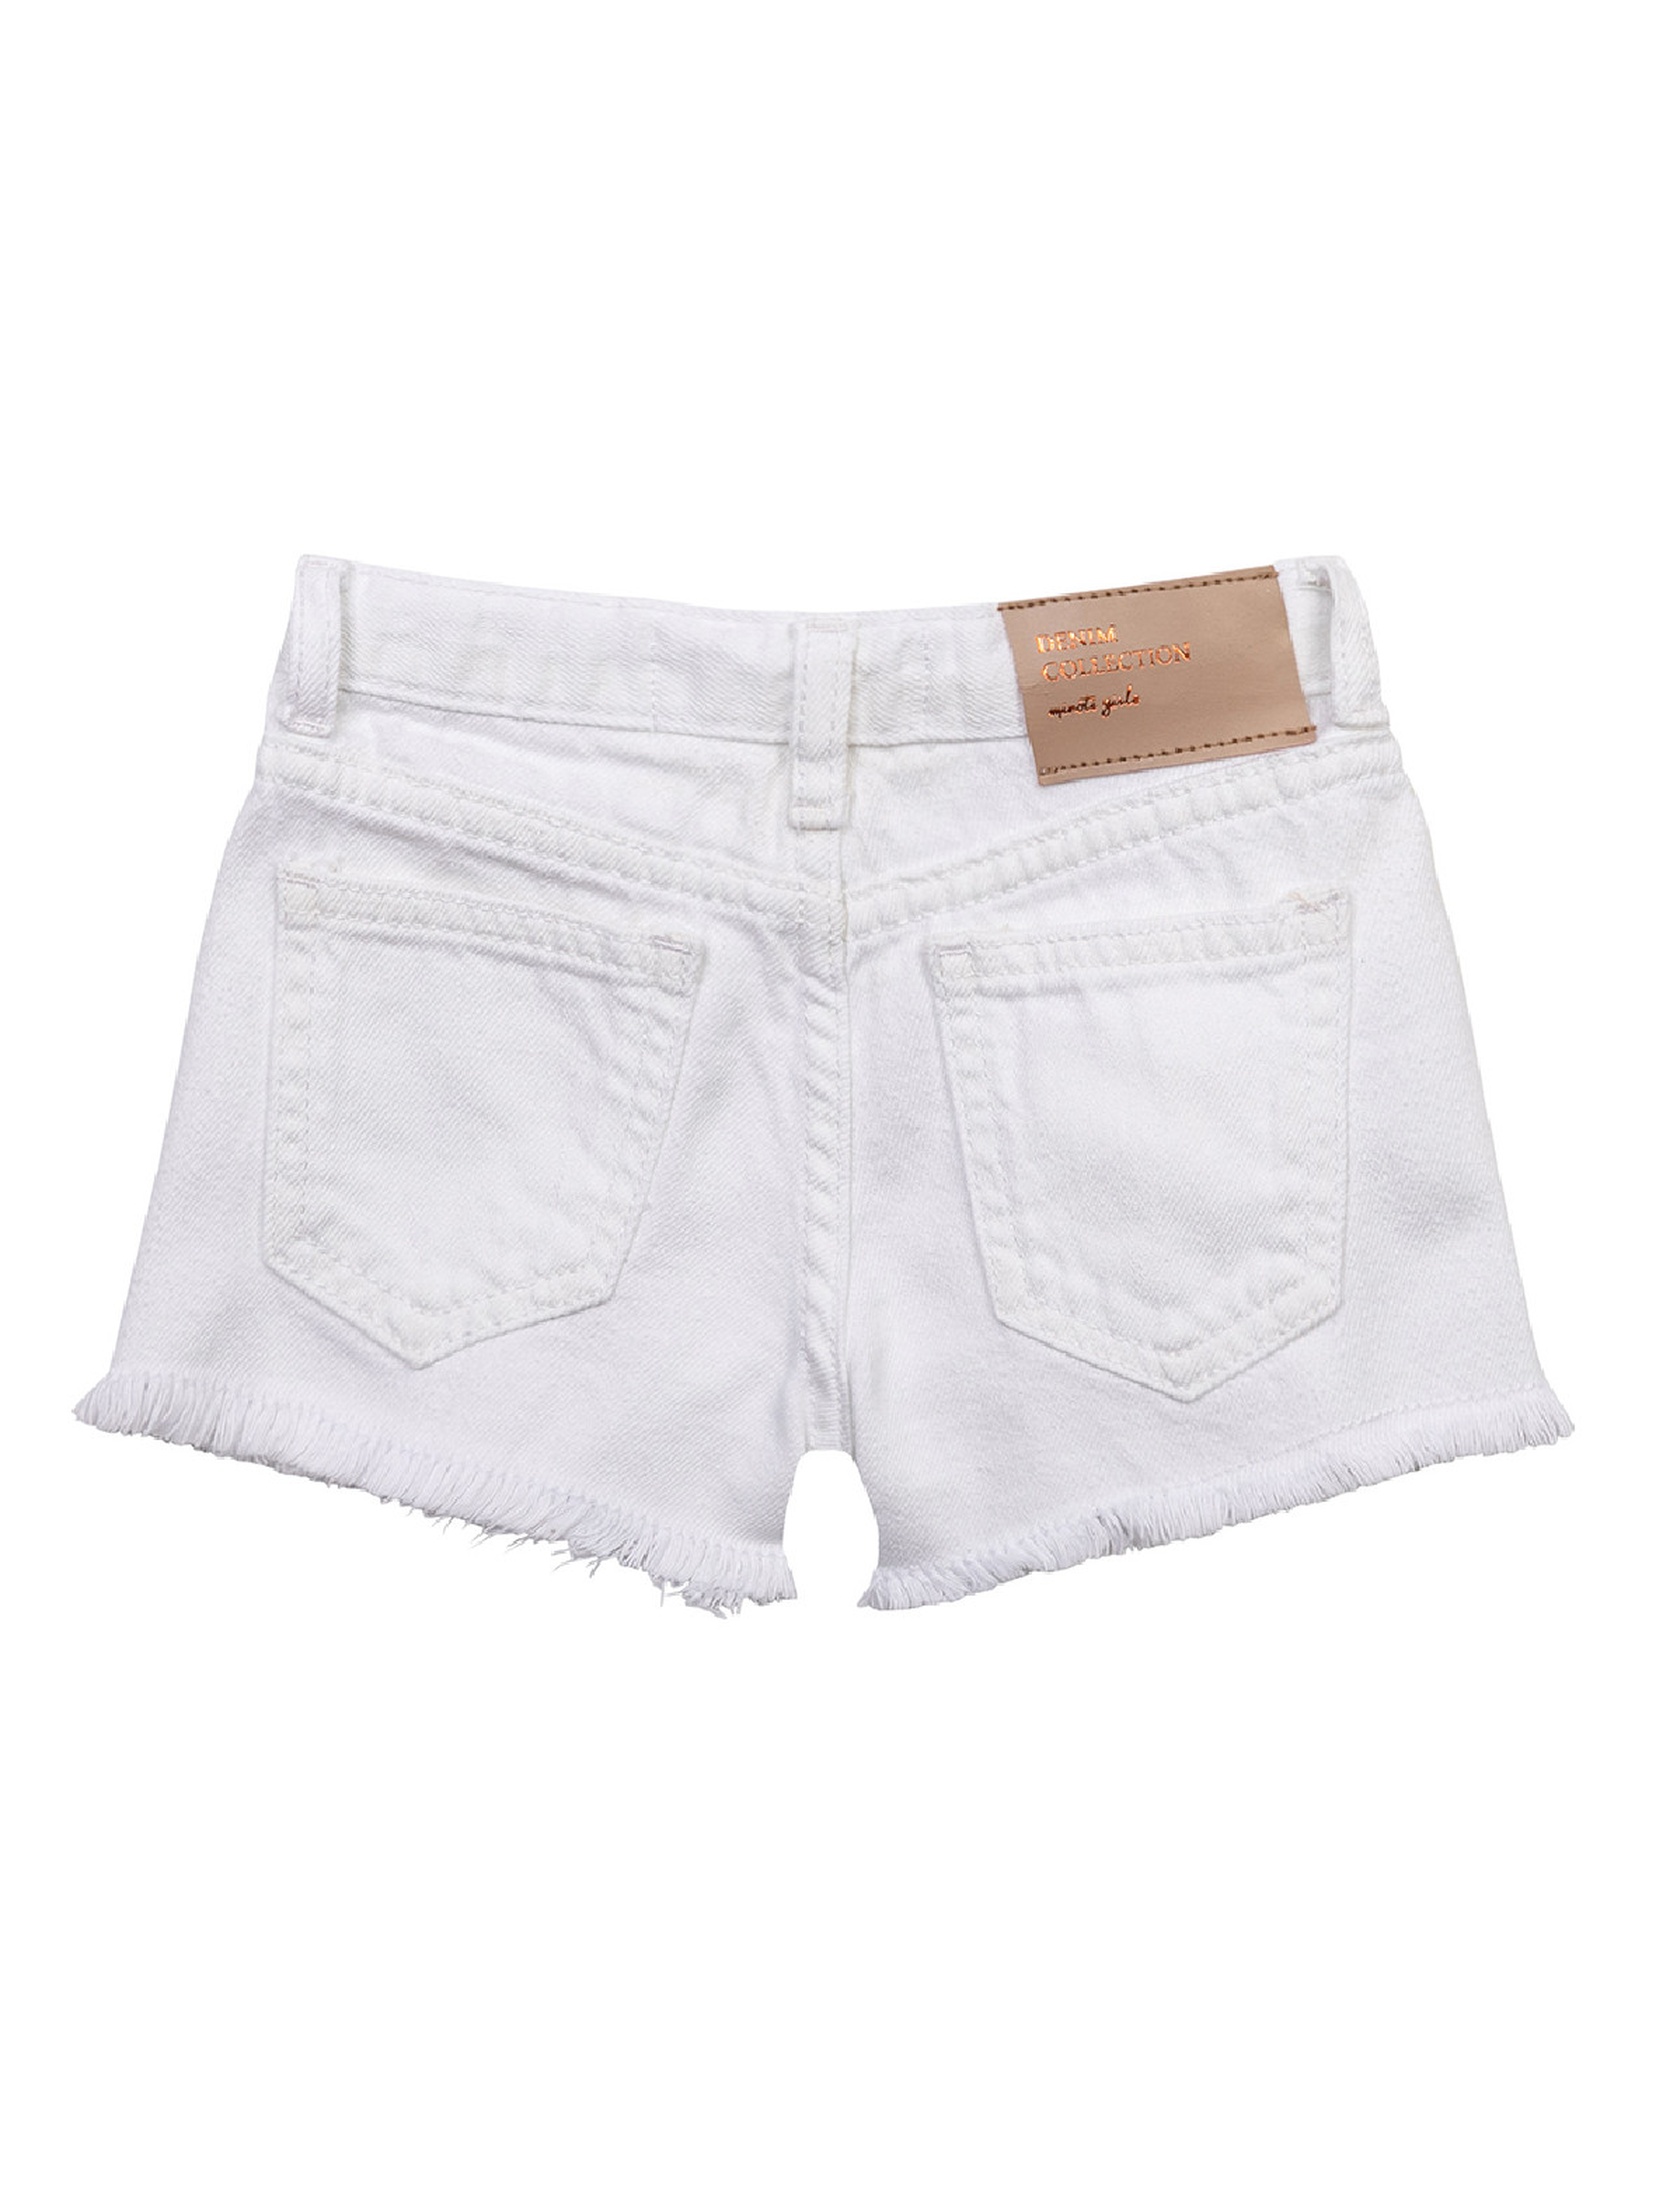 Jeansowe szorty z dekoracyjnym wykończeniem nogawek dziewczęce - białe